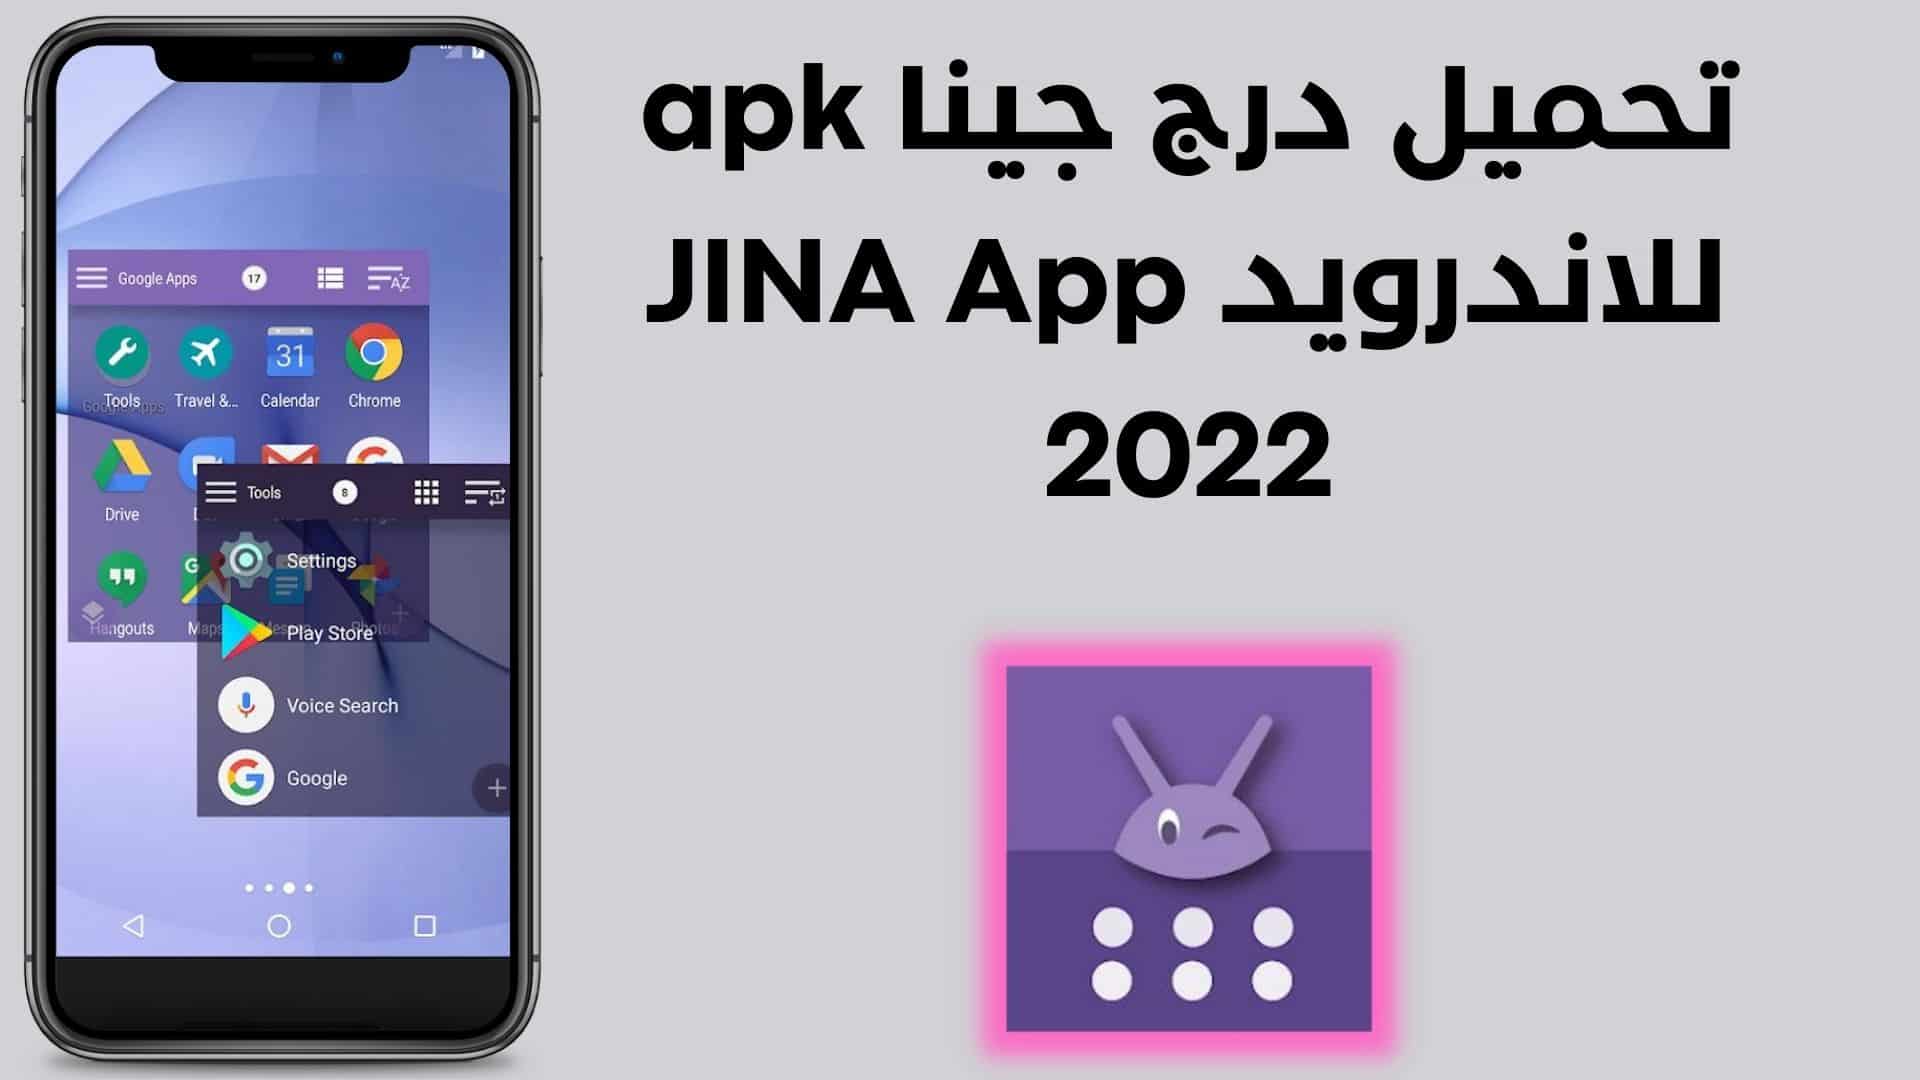 تحميل درج جينا apk للاندرويد JINA App 2022